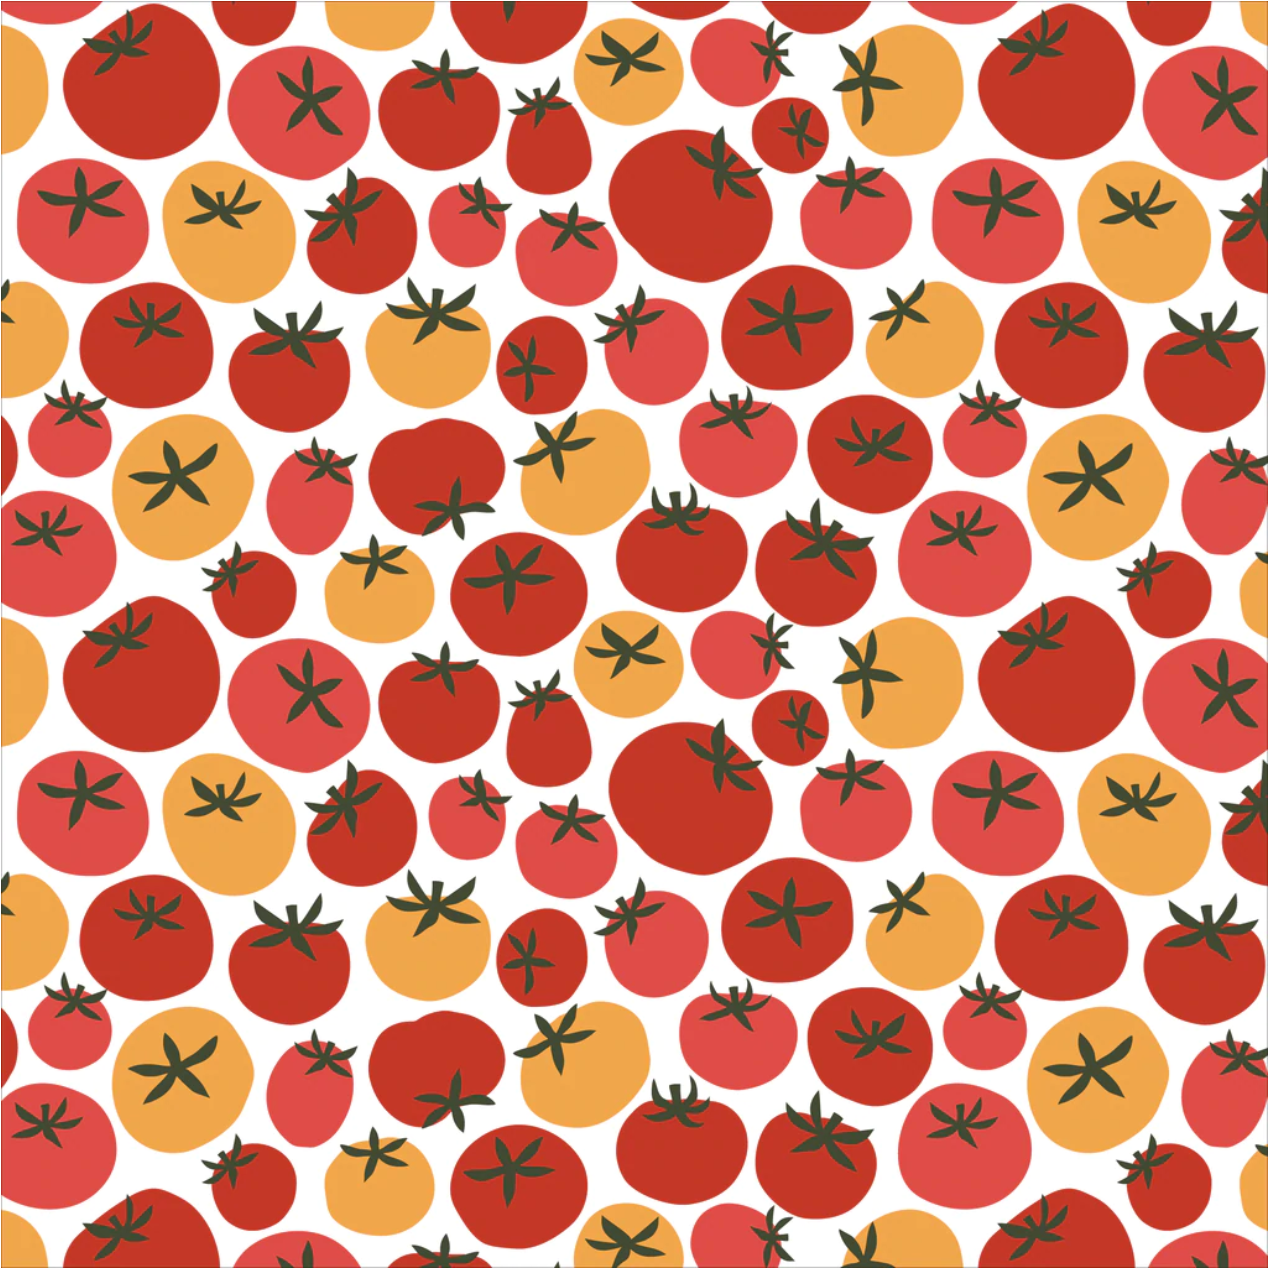 Tomato pattern